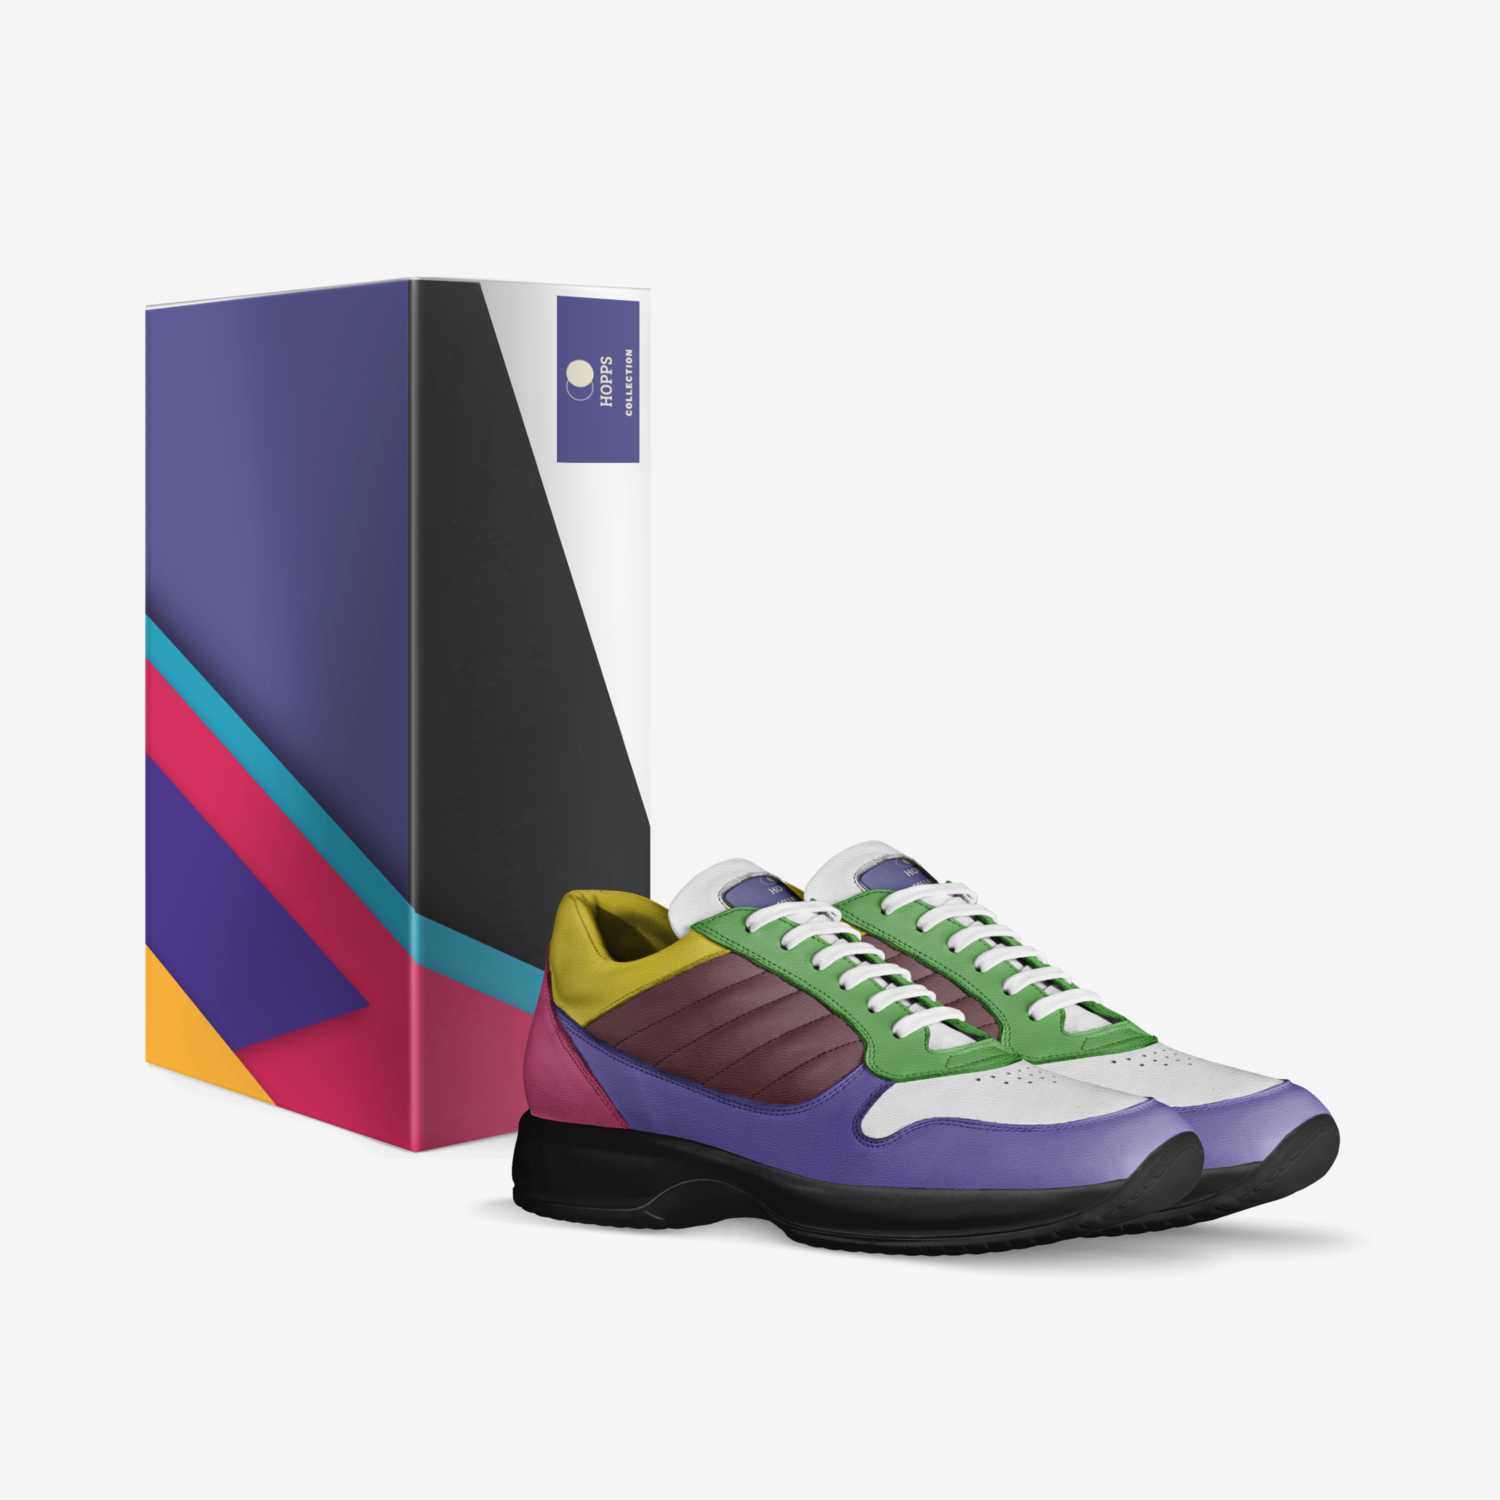 HOPPS custom made in Italy shoes by Martin Hendrick | Box view